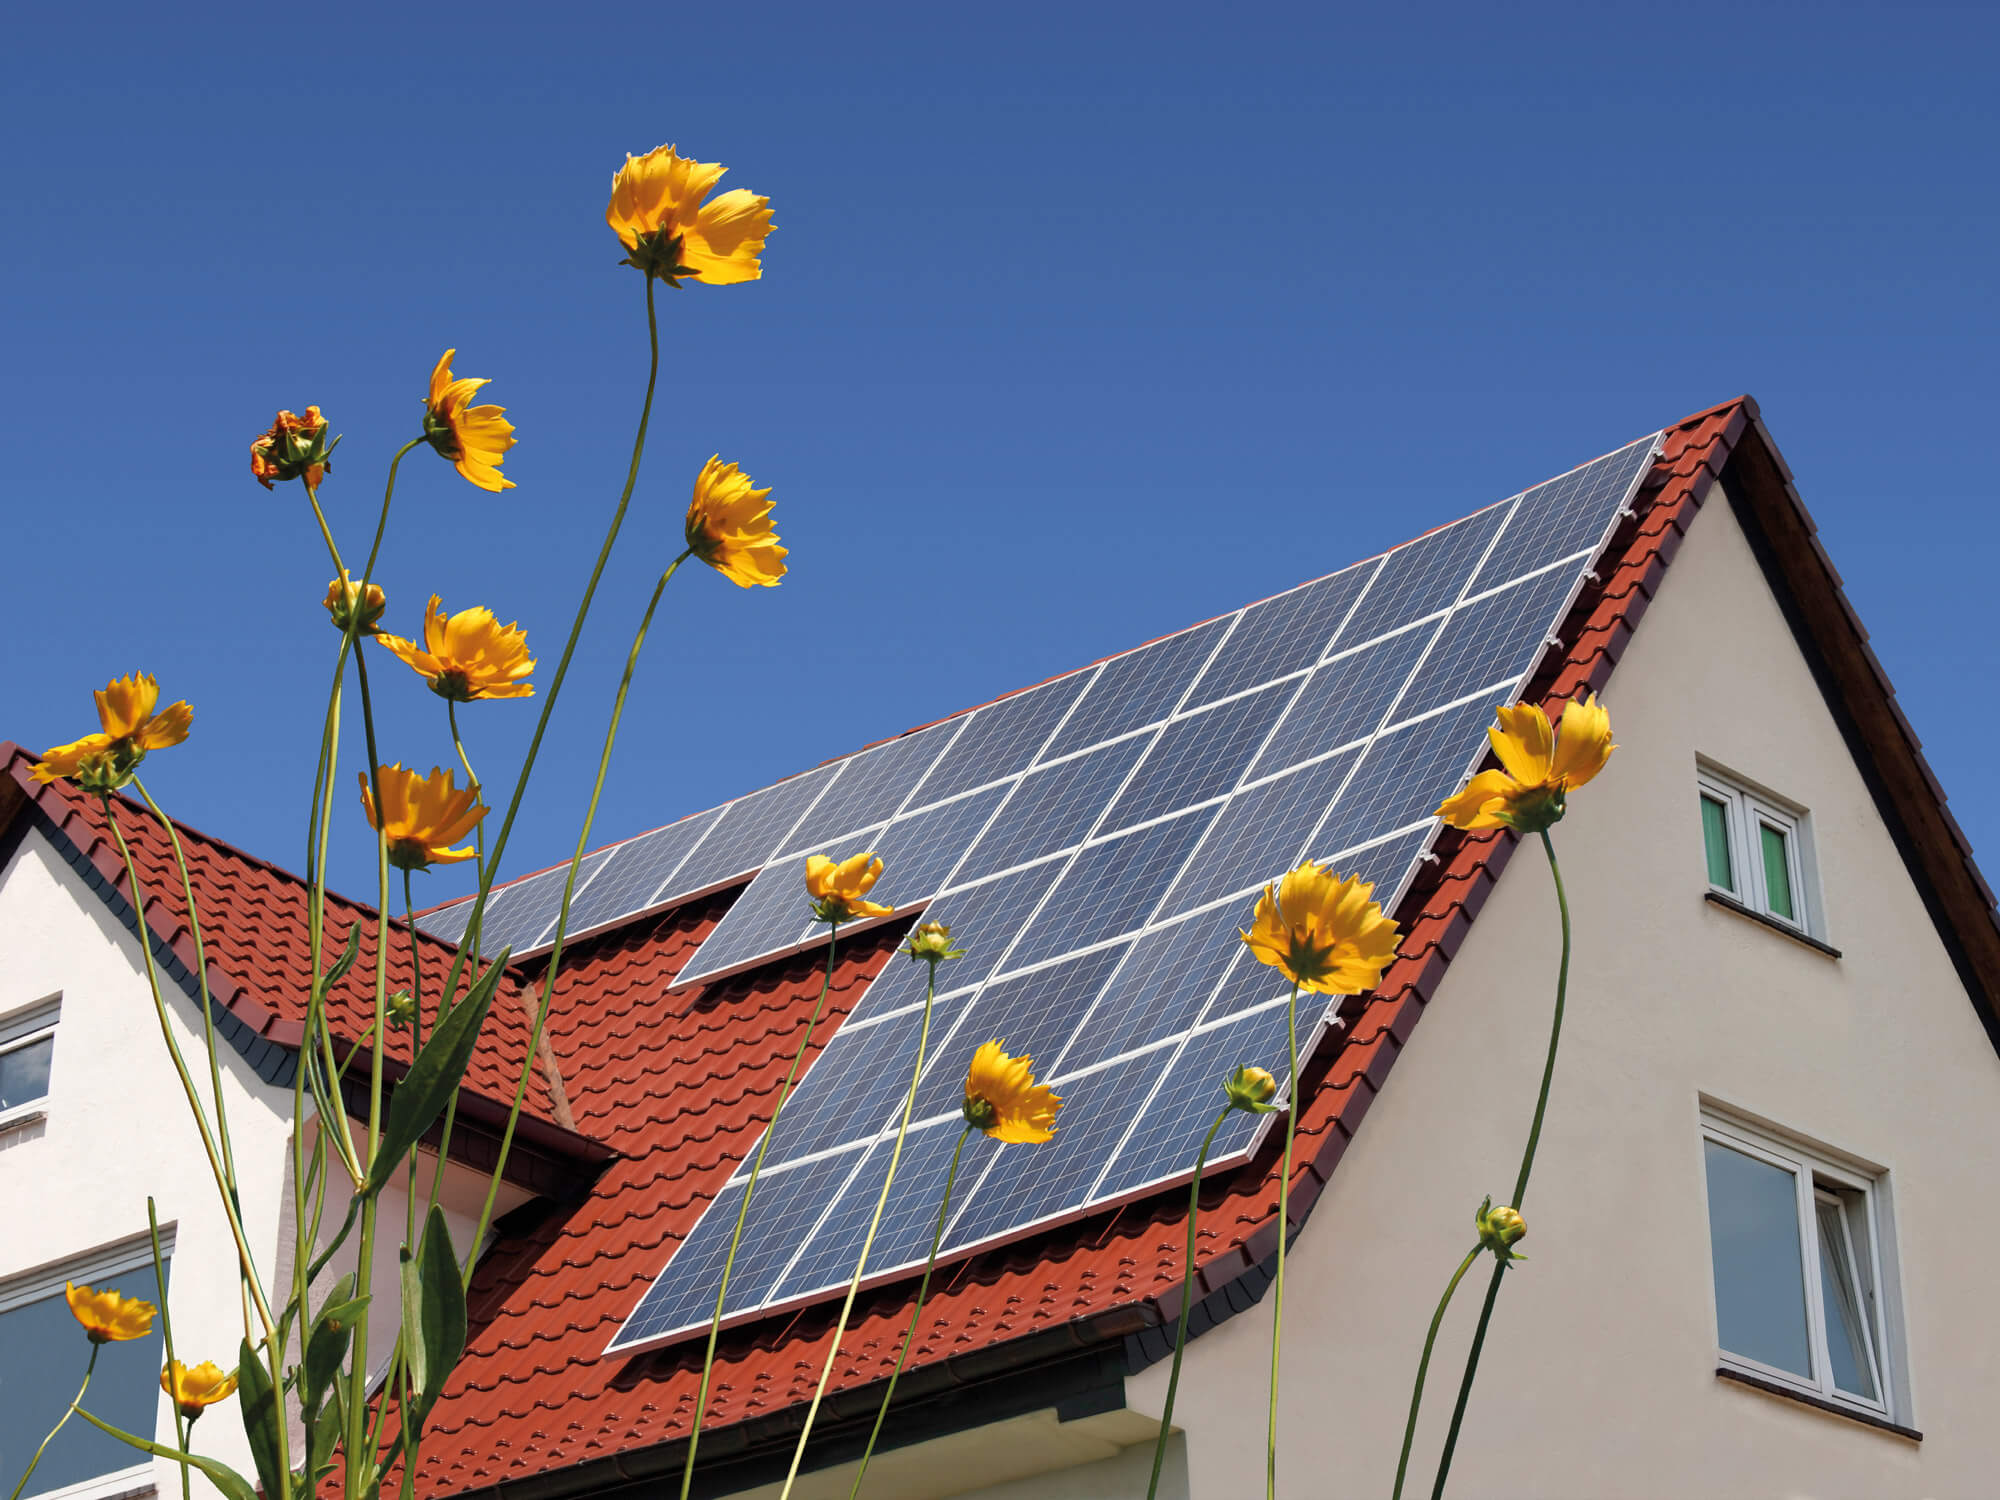 Niko home control, huisautomatisering en domotica met zonnepanelen